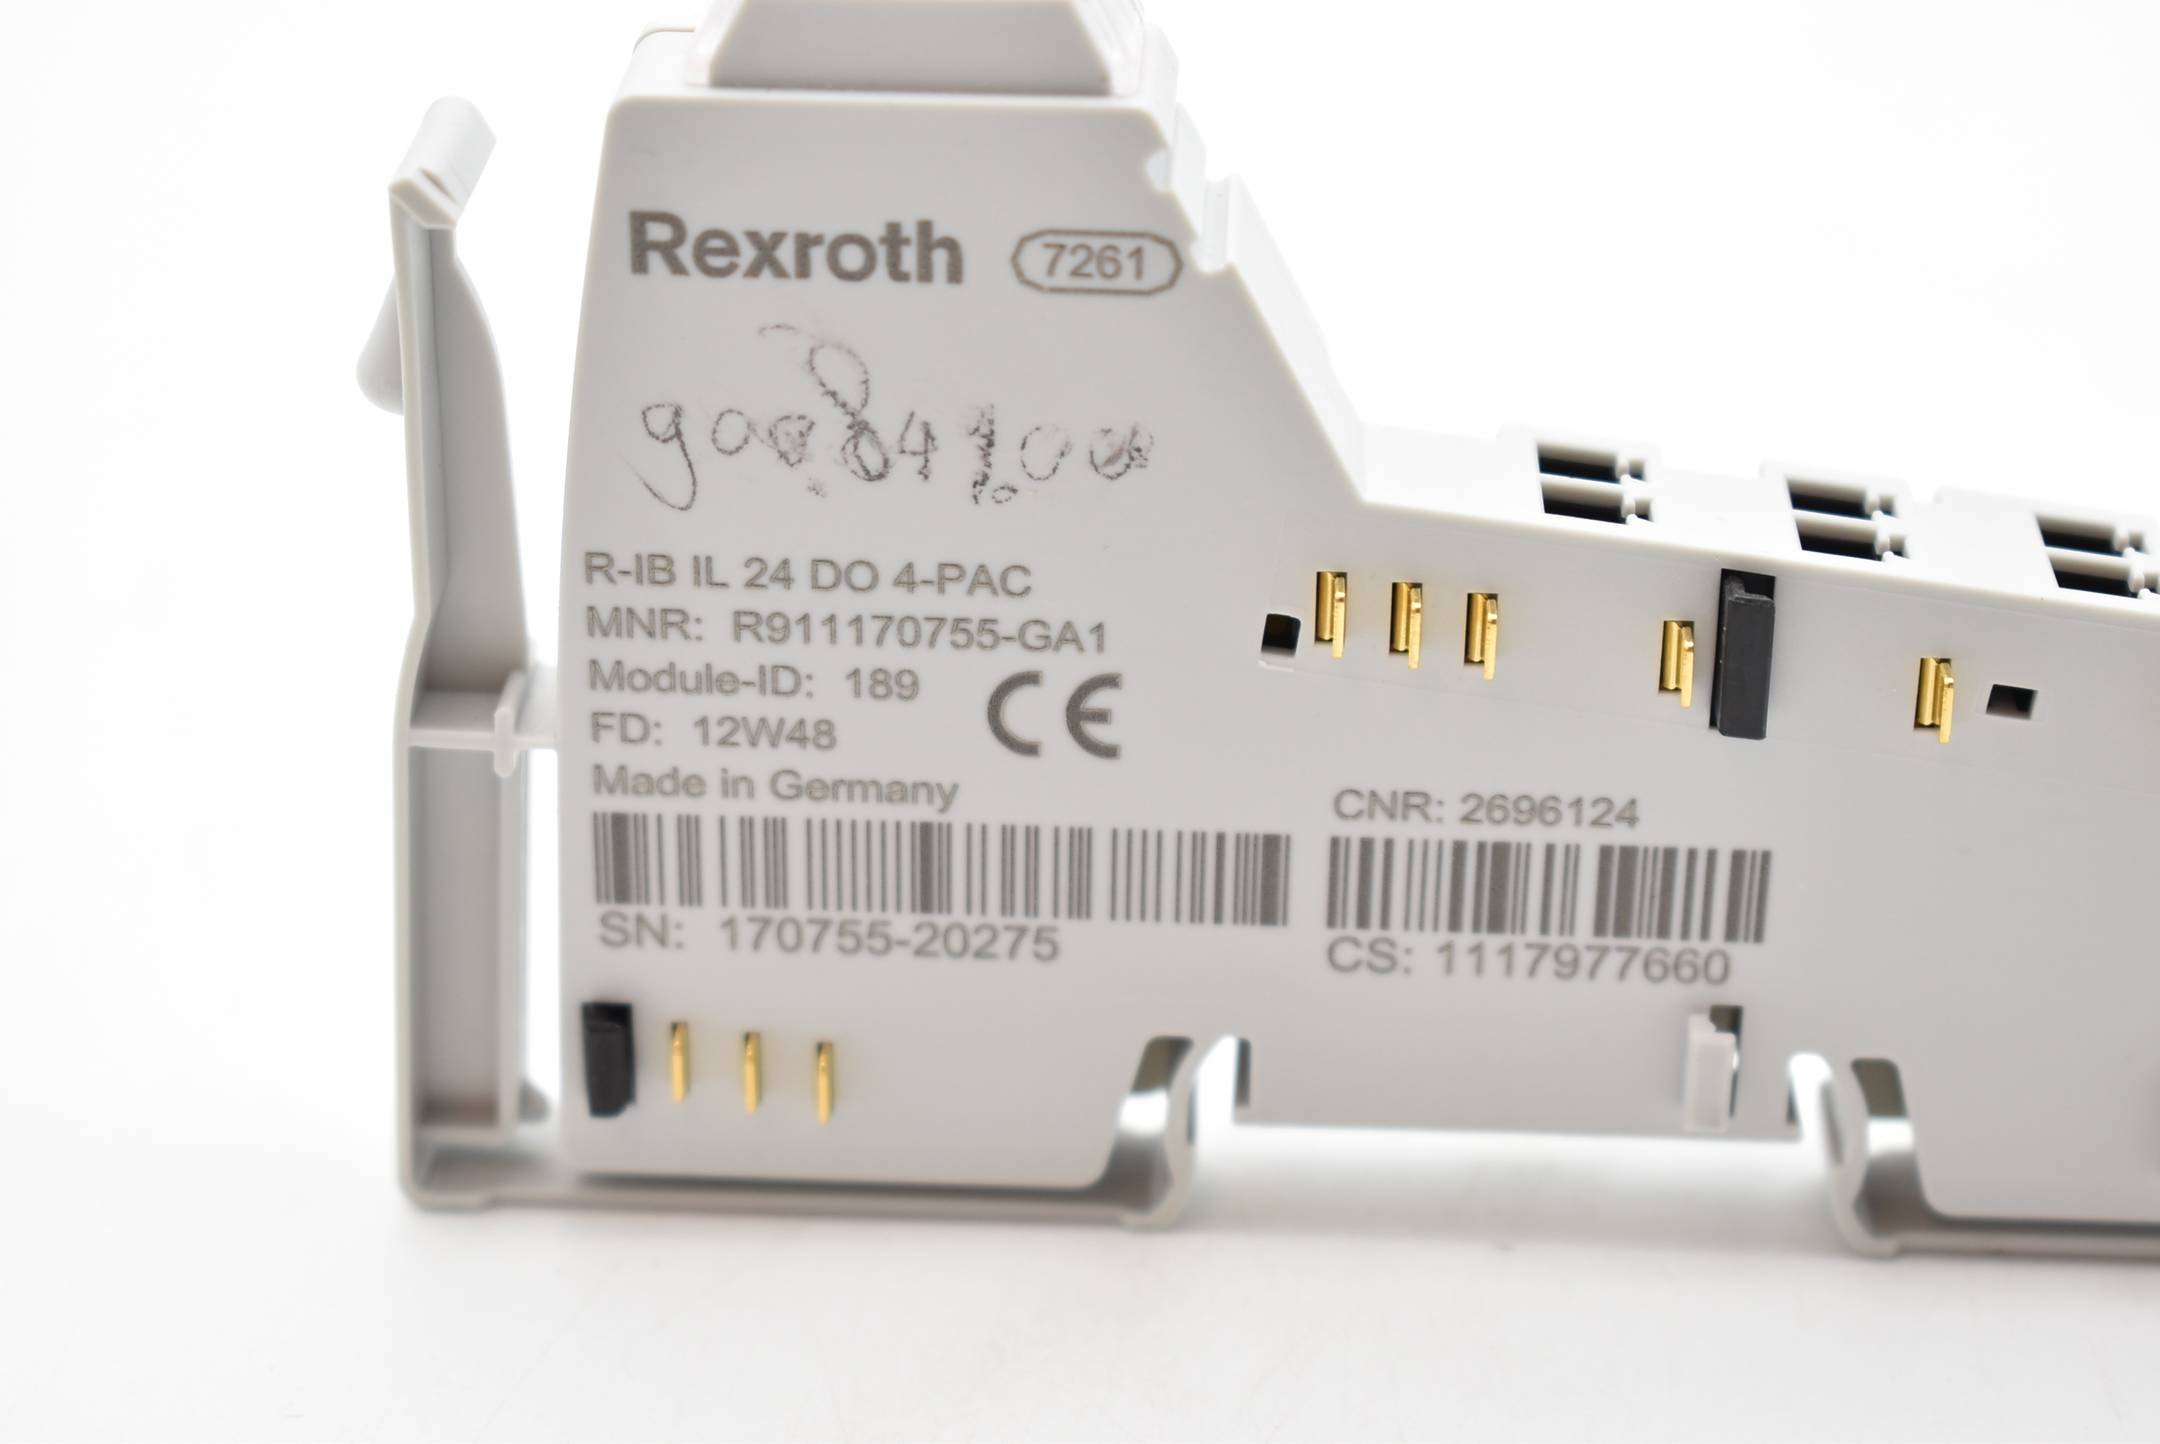 Rexroth R-IB IL 24 DO 4-PAC ( R911170755-GA1 )